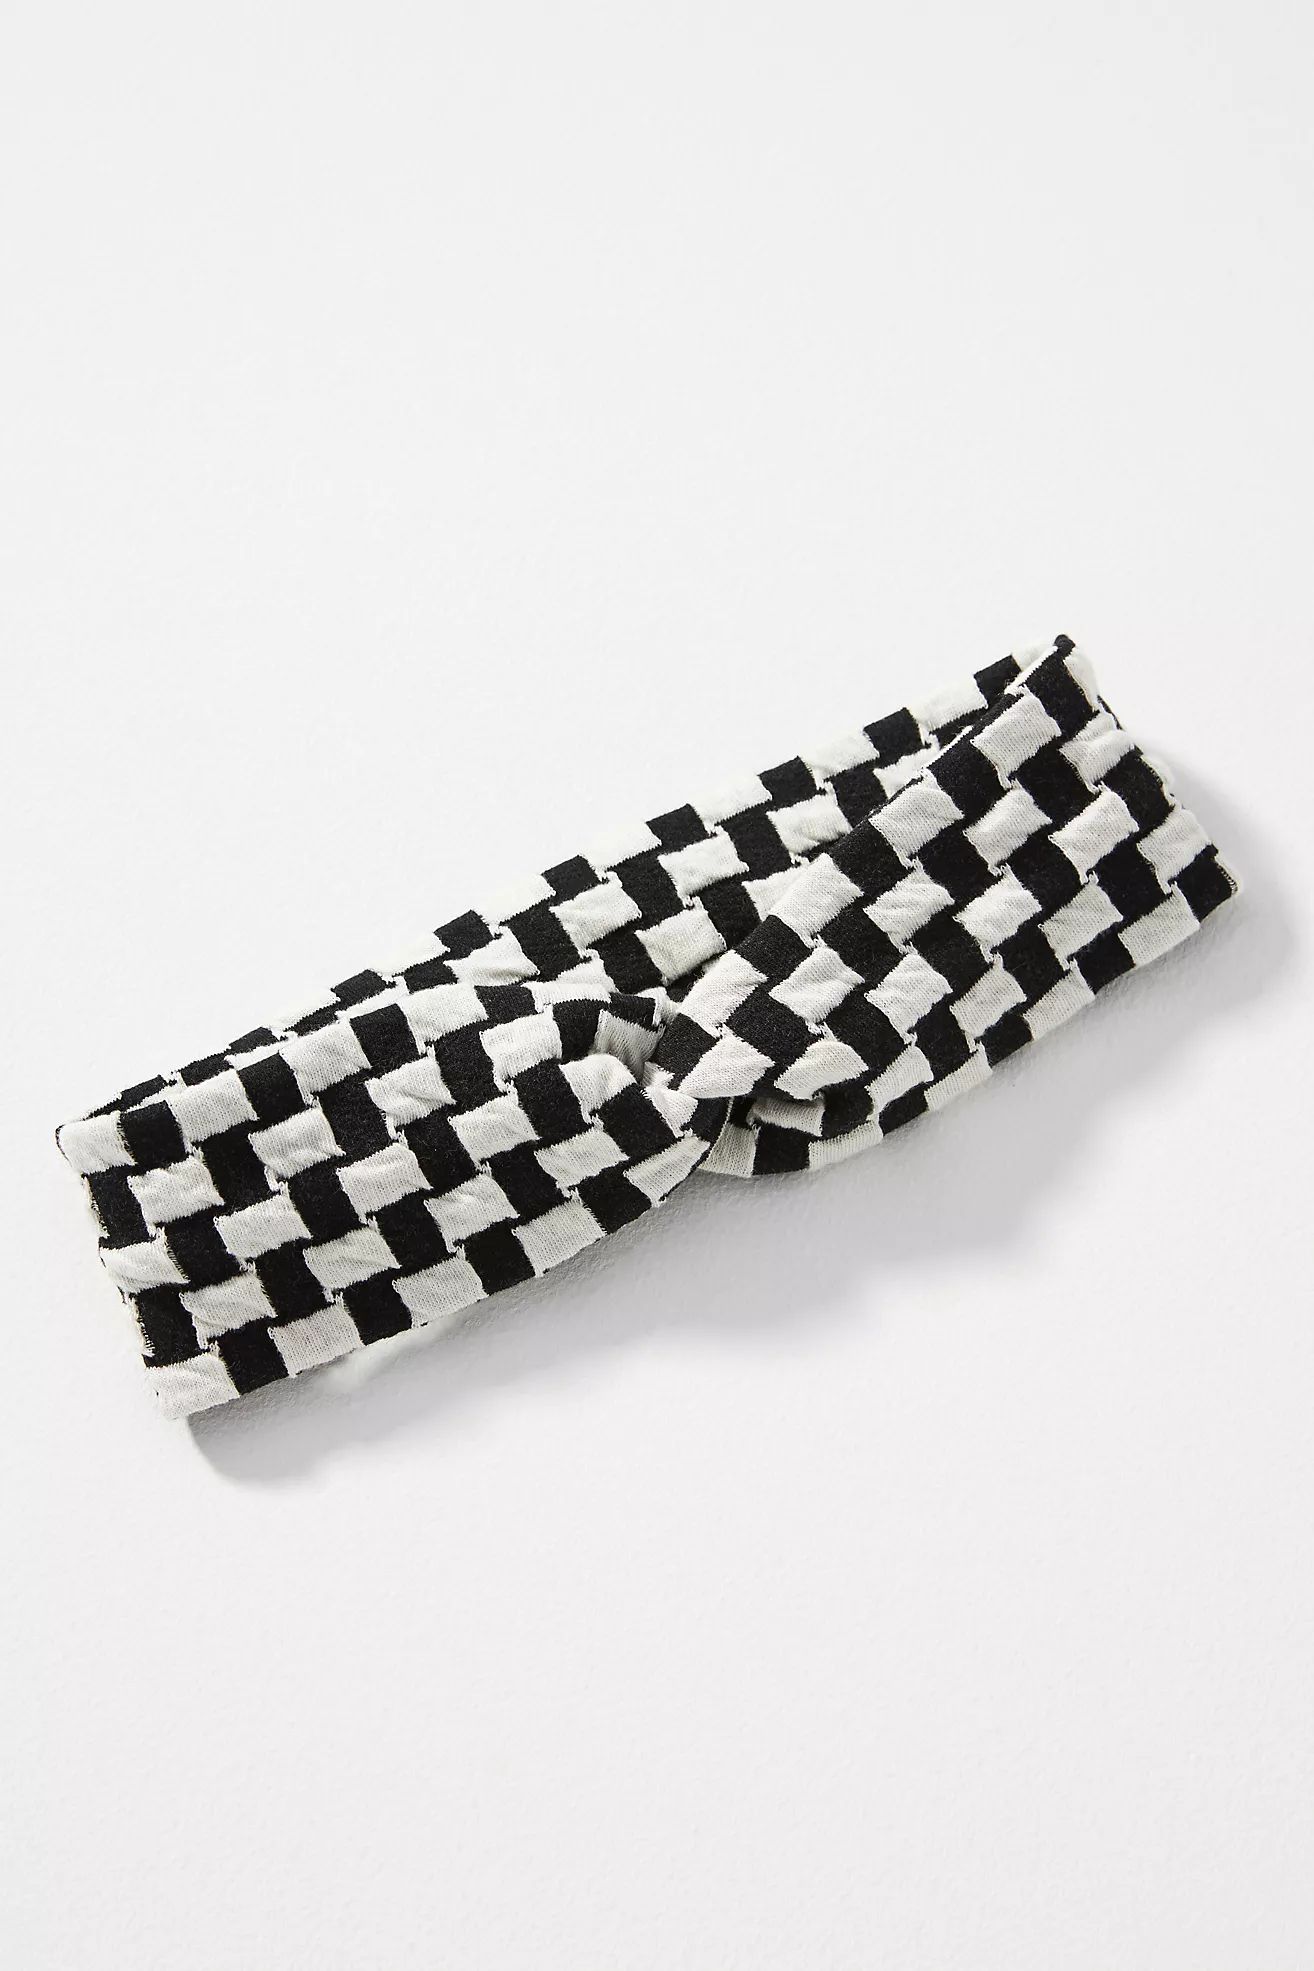 Checkered GRWN Headband | Anthropologie (US)